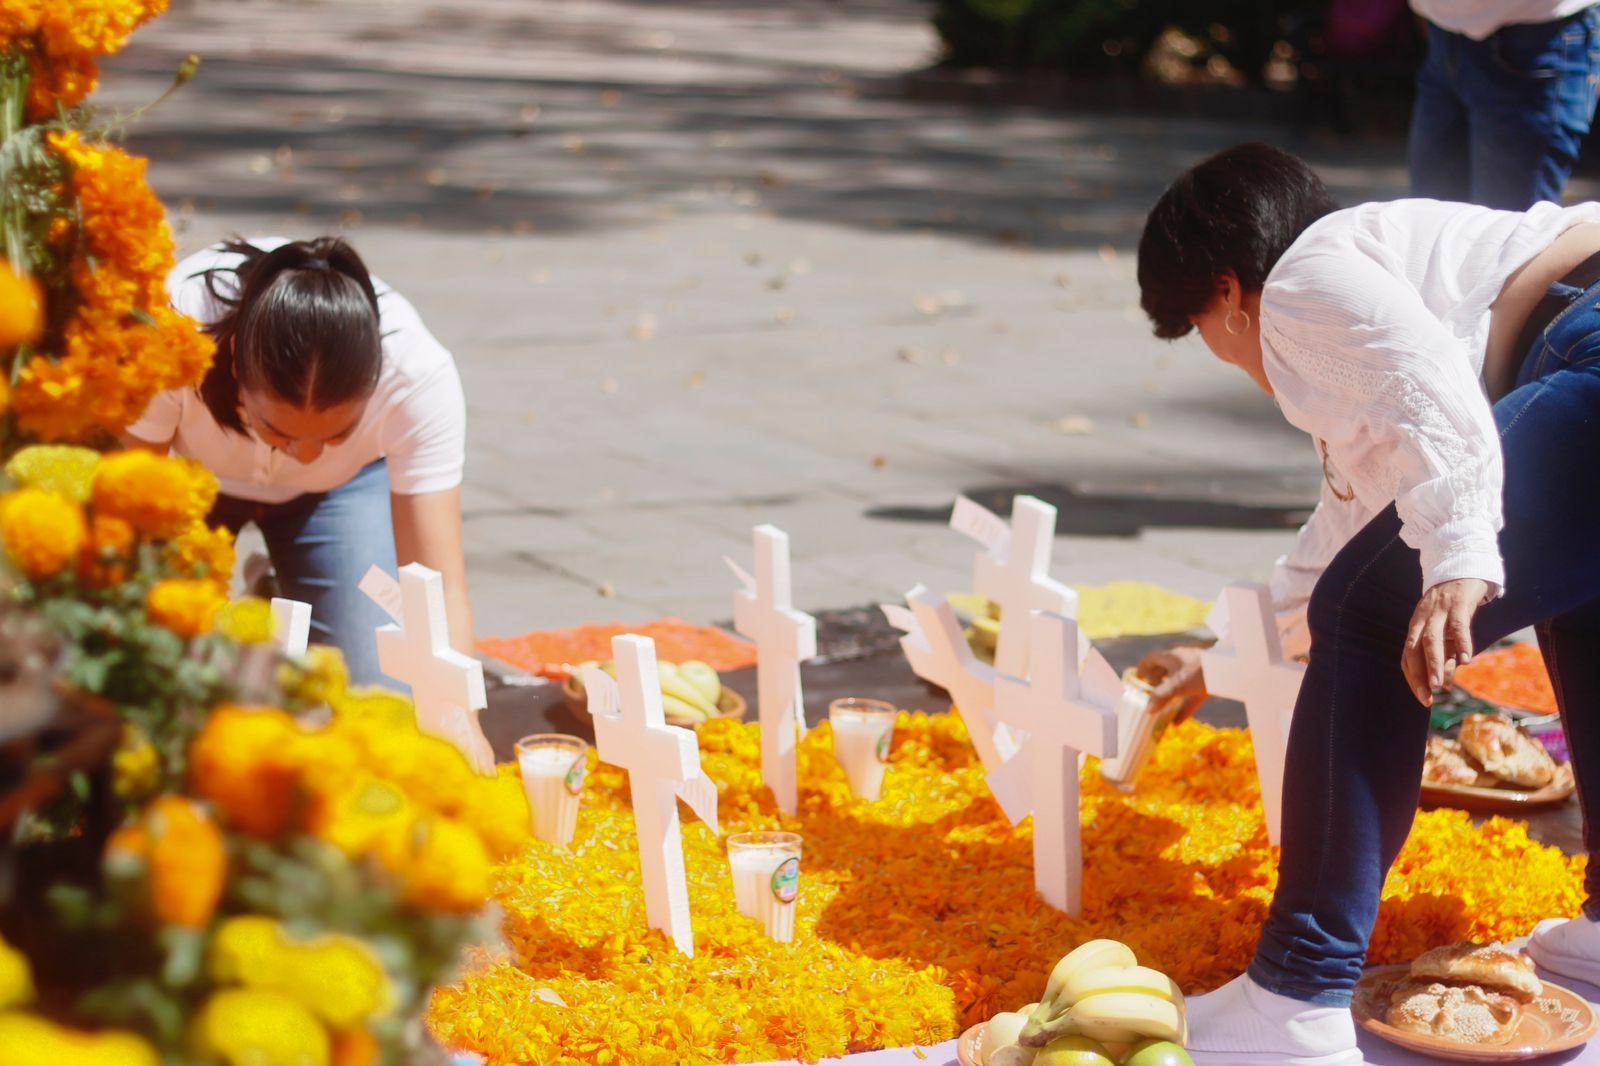 Ciudadanos por Tlaxcala colocan ofrenda a víctimas de feminicidios 